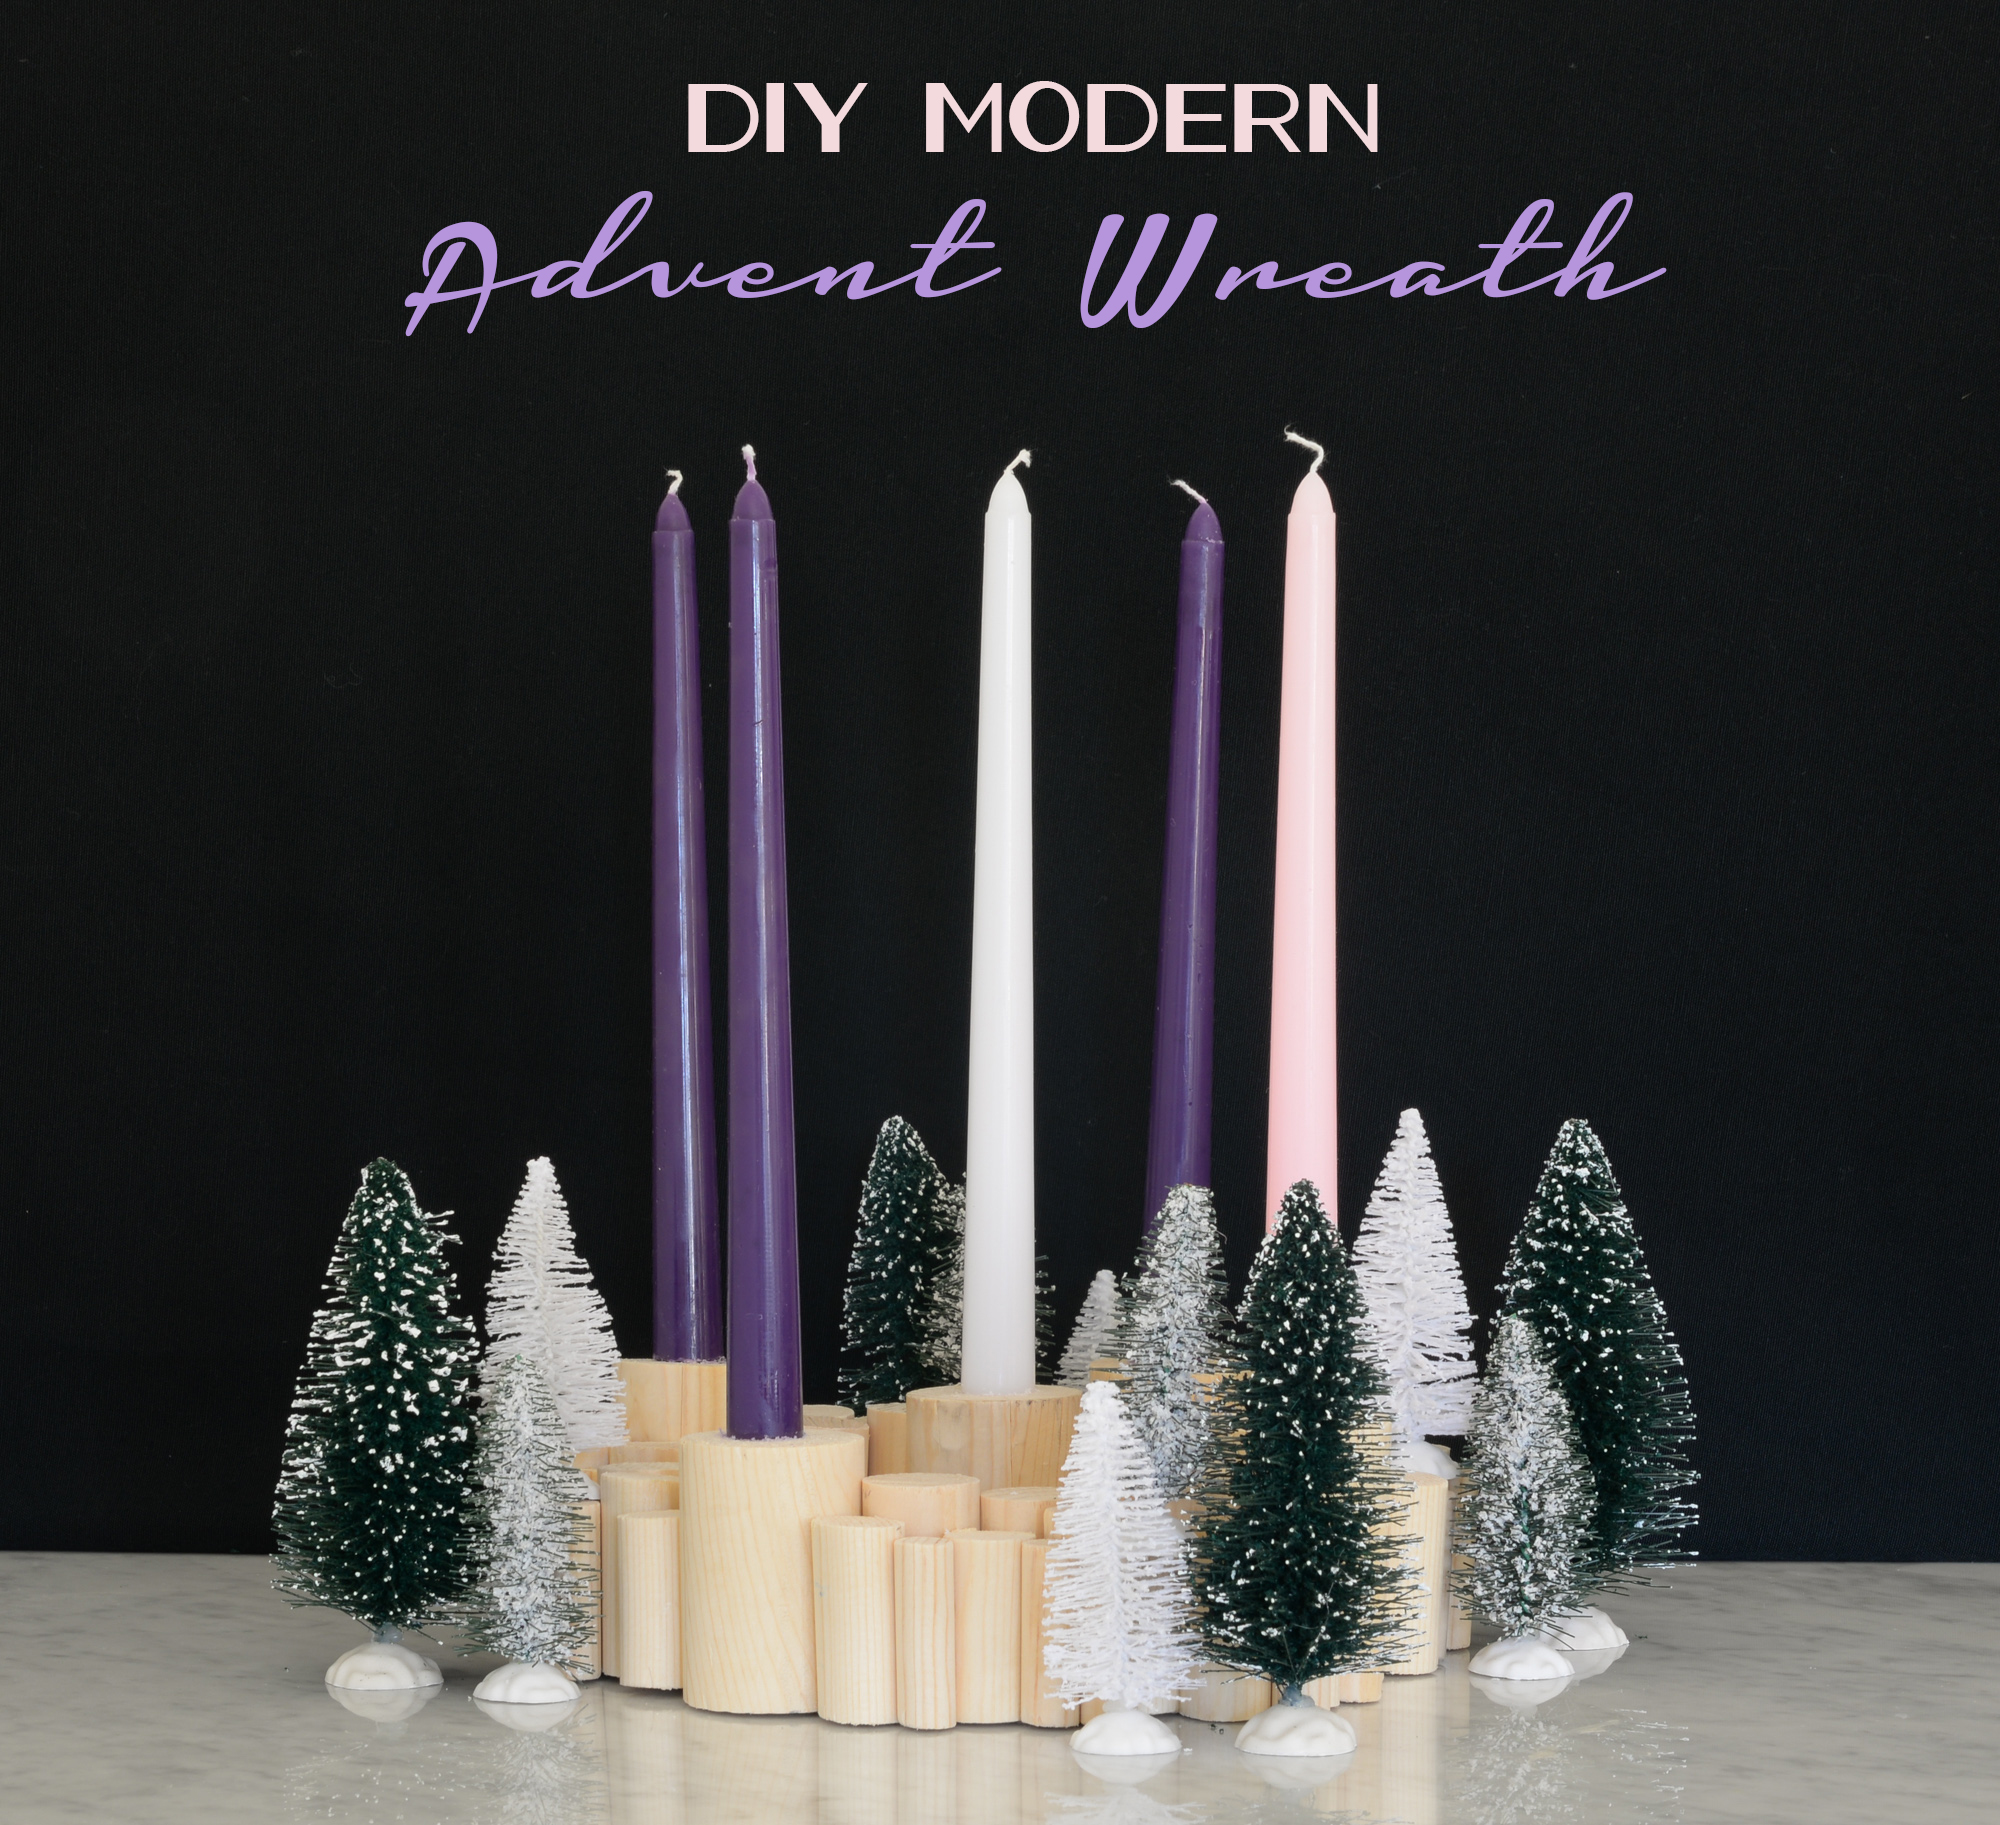 http://www.willscasa.com/wp-content/uploads/2015/11/DIY-Modern-Advent-Wreath.jpg